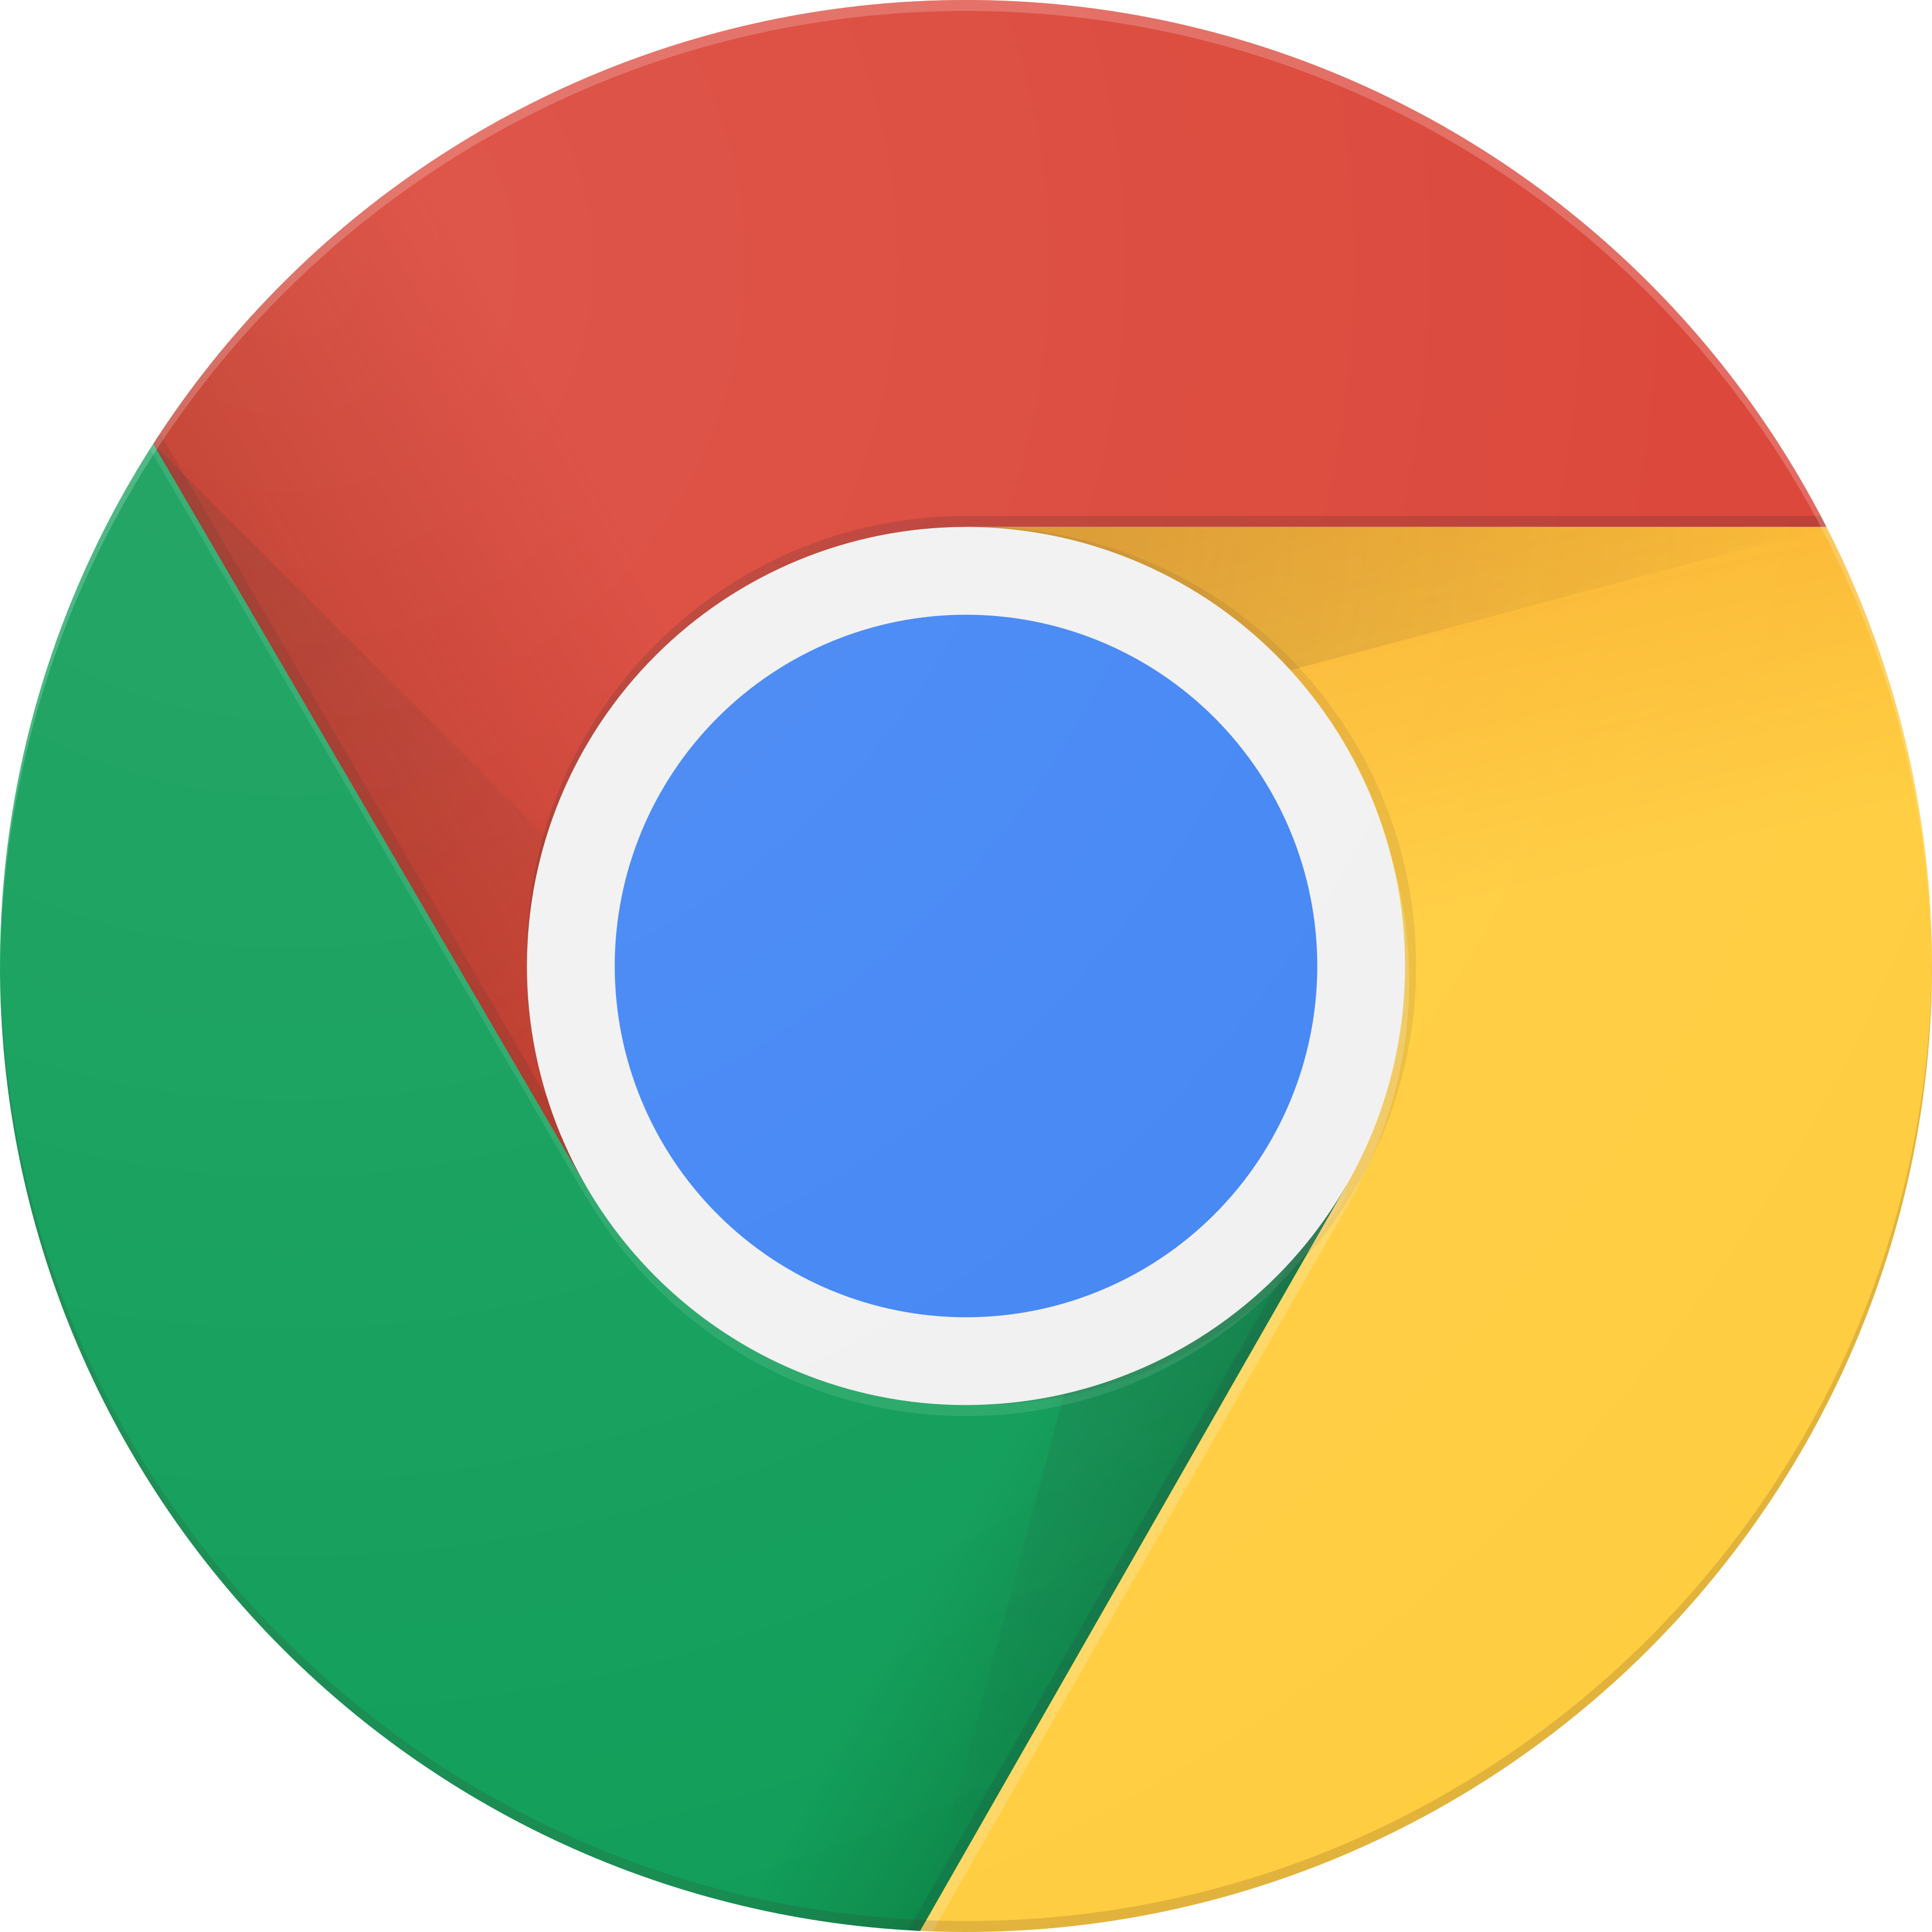 Official Google Chrome logo fond Transparent